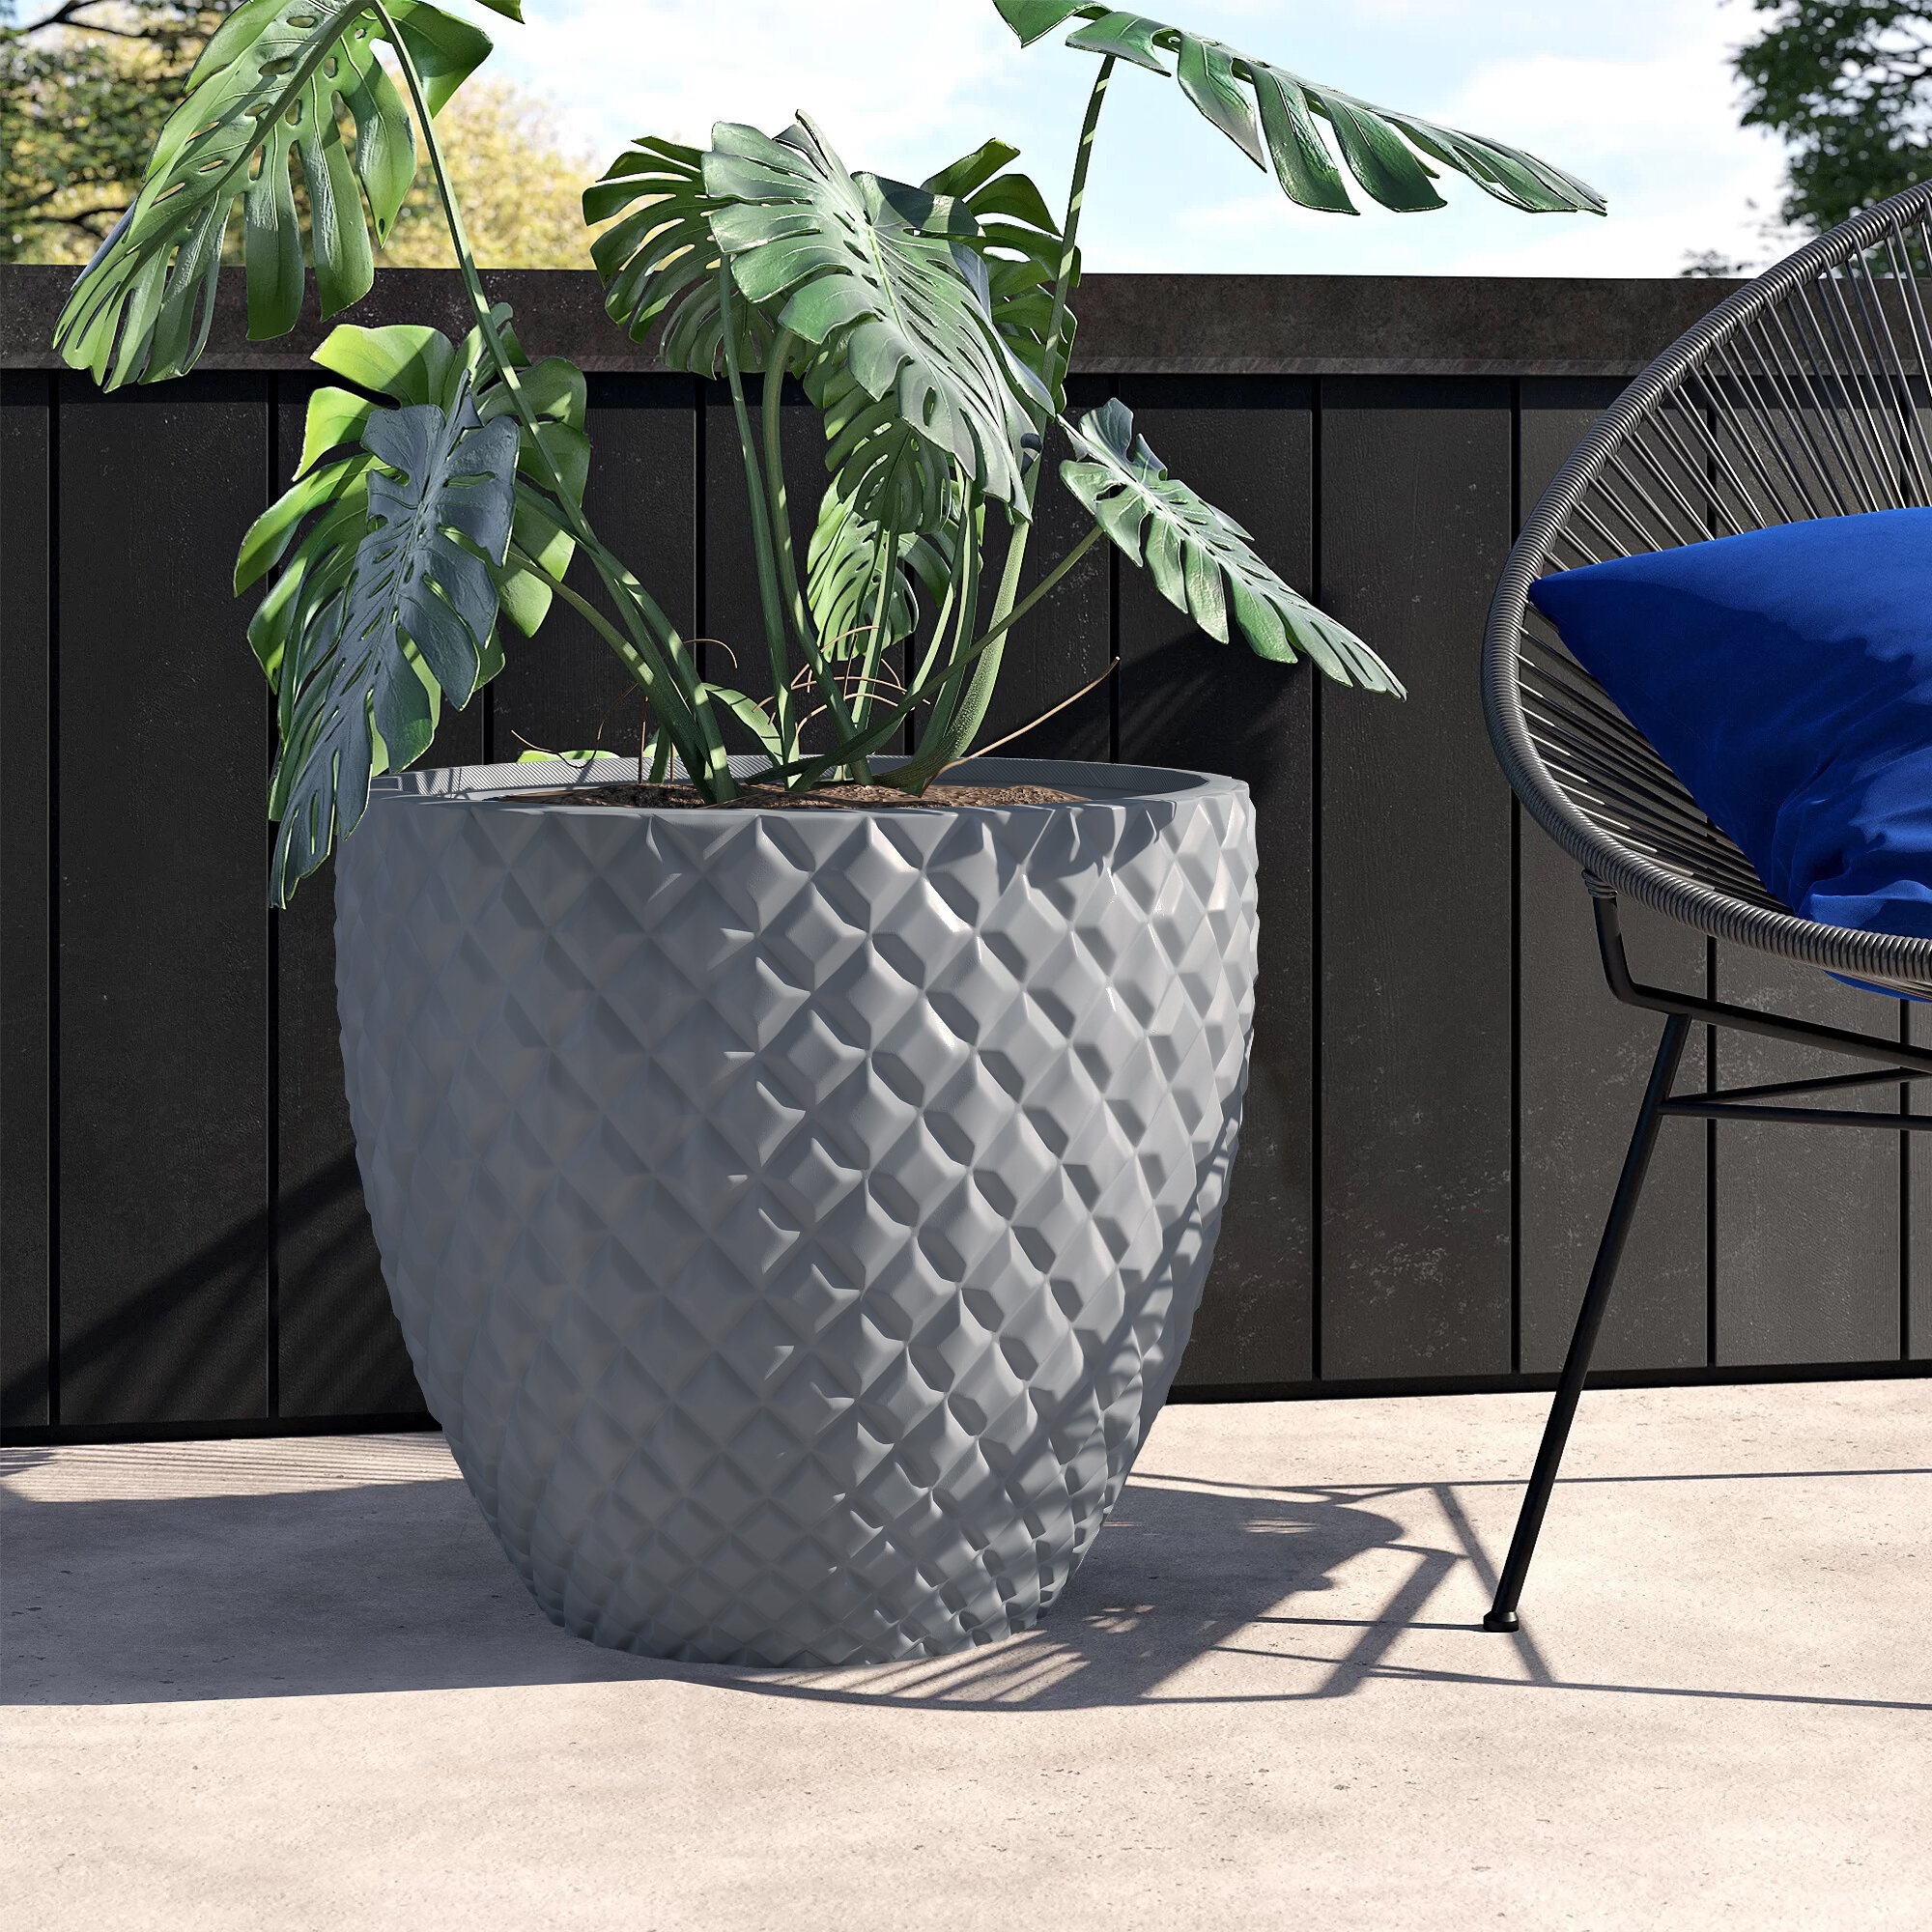 Ceramic Succulent Pots Planters House Plants Pots Set Indoor&Outdoor Use Eggs 